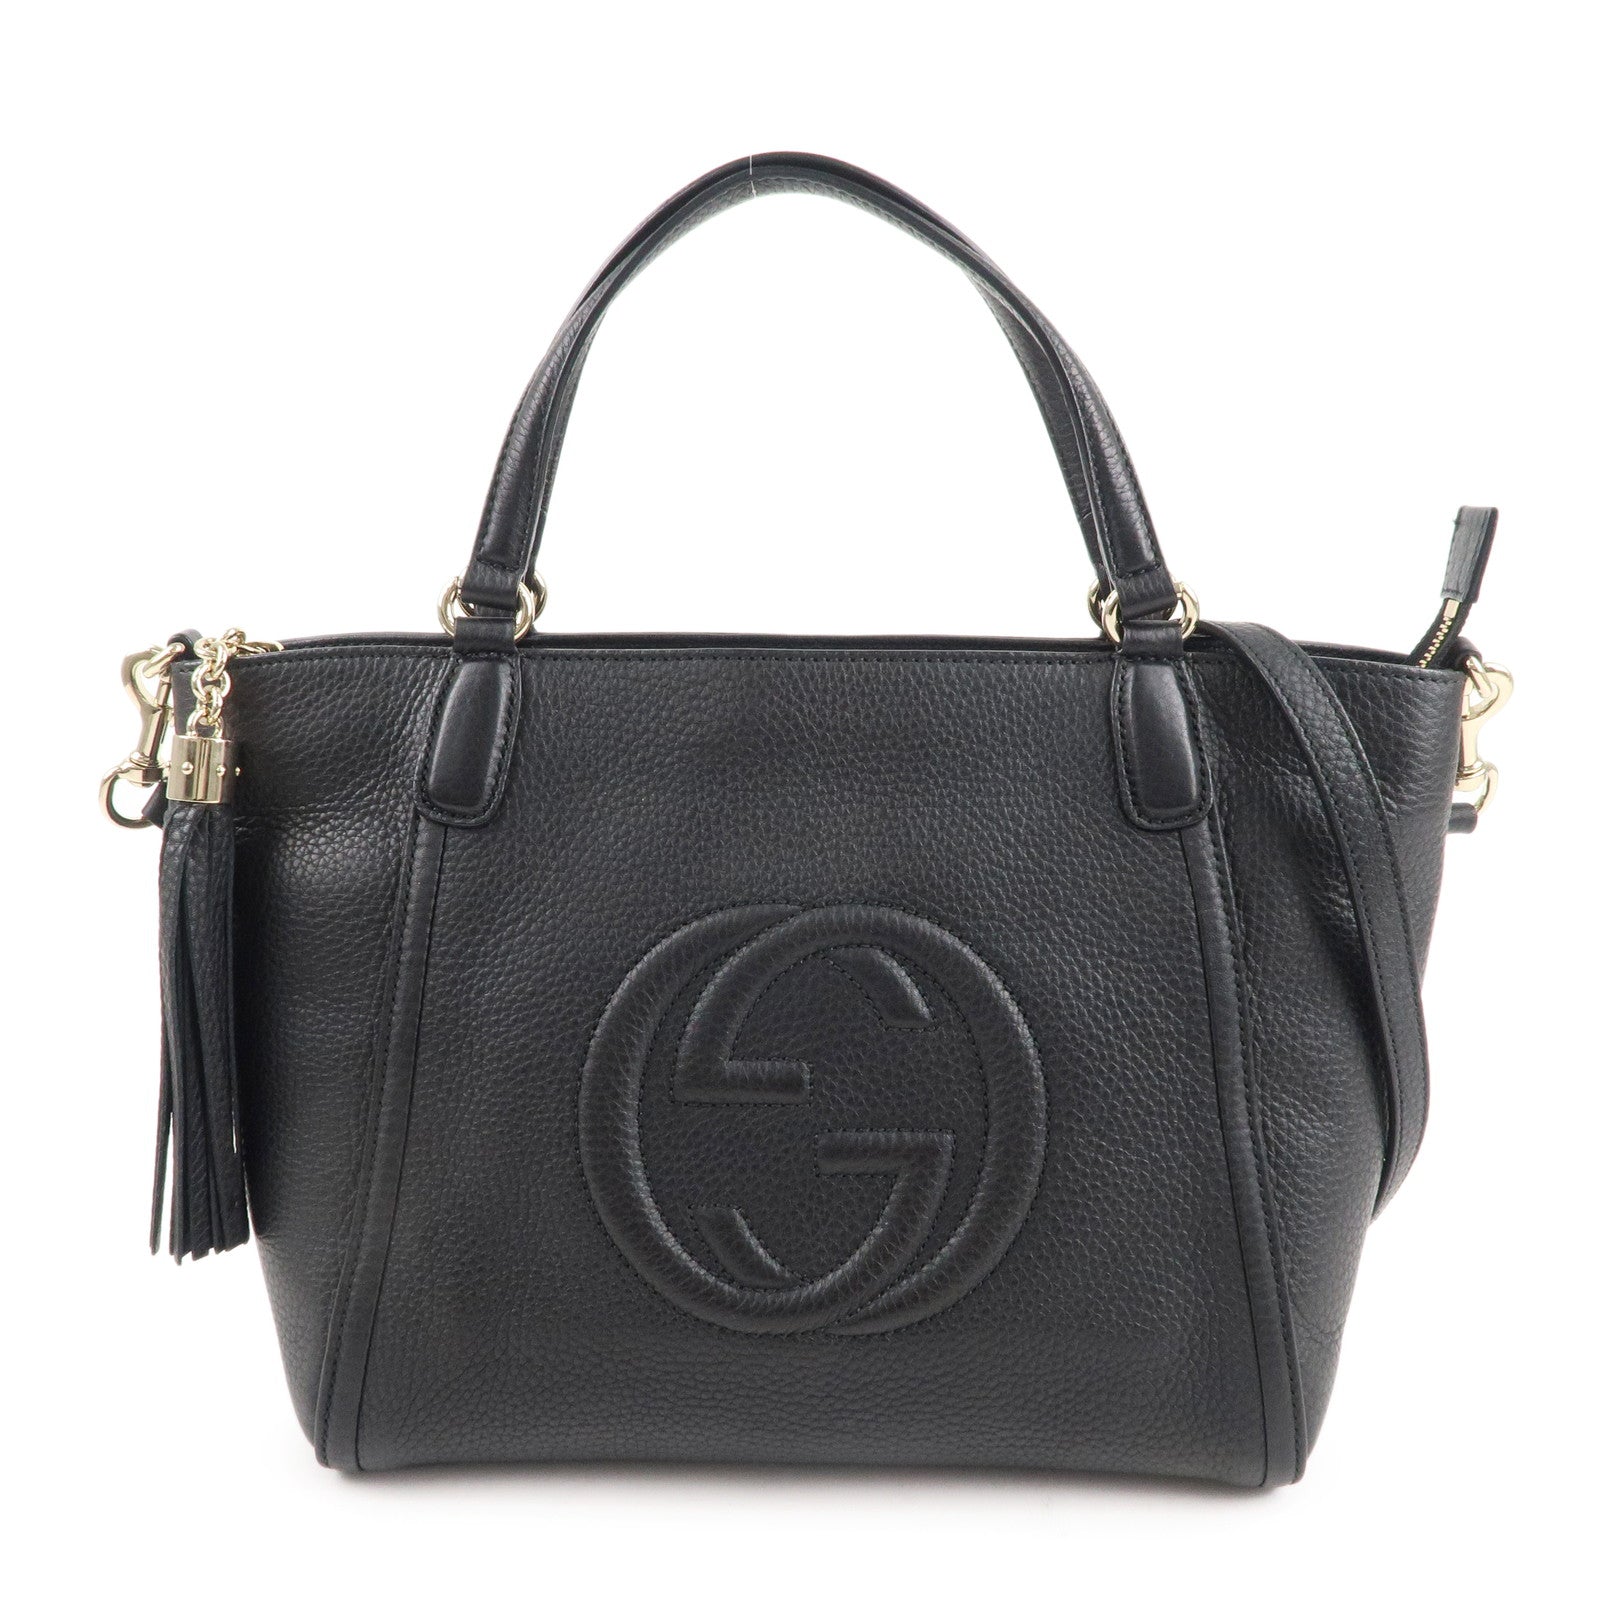 GUCCI-SOHO-Leather-2-Way-Hand-Bag-Shoulder-Bag-Black-369176 – dct